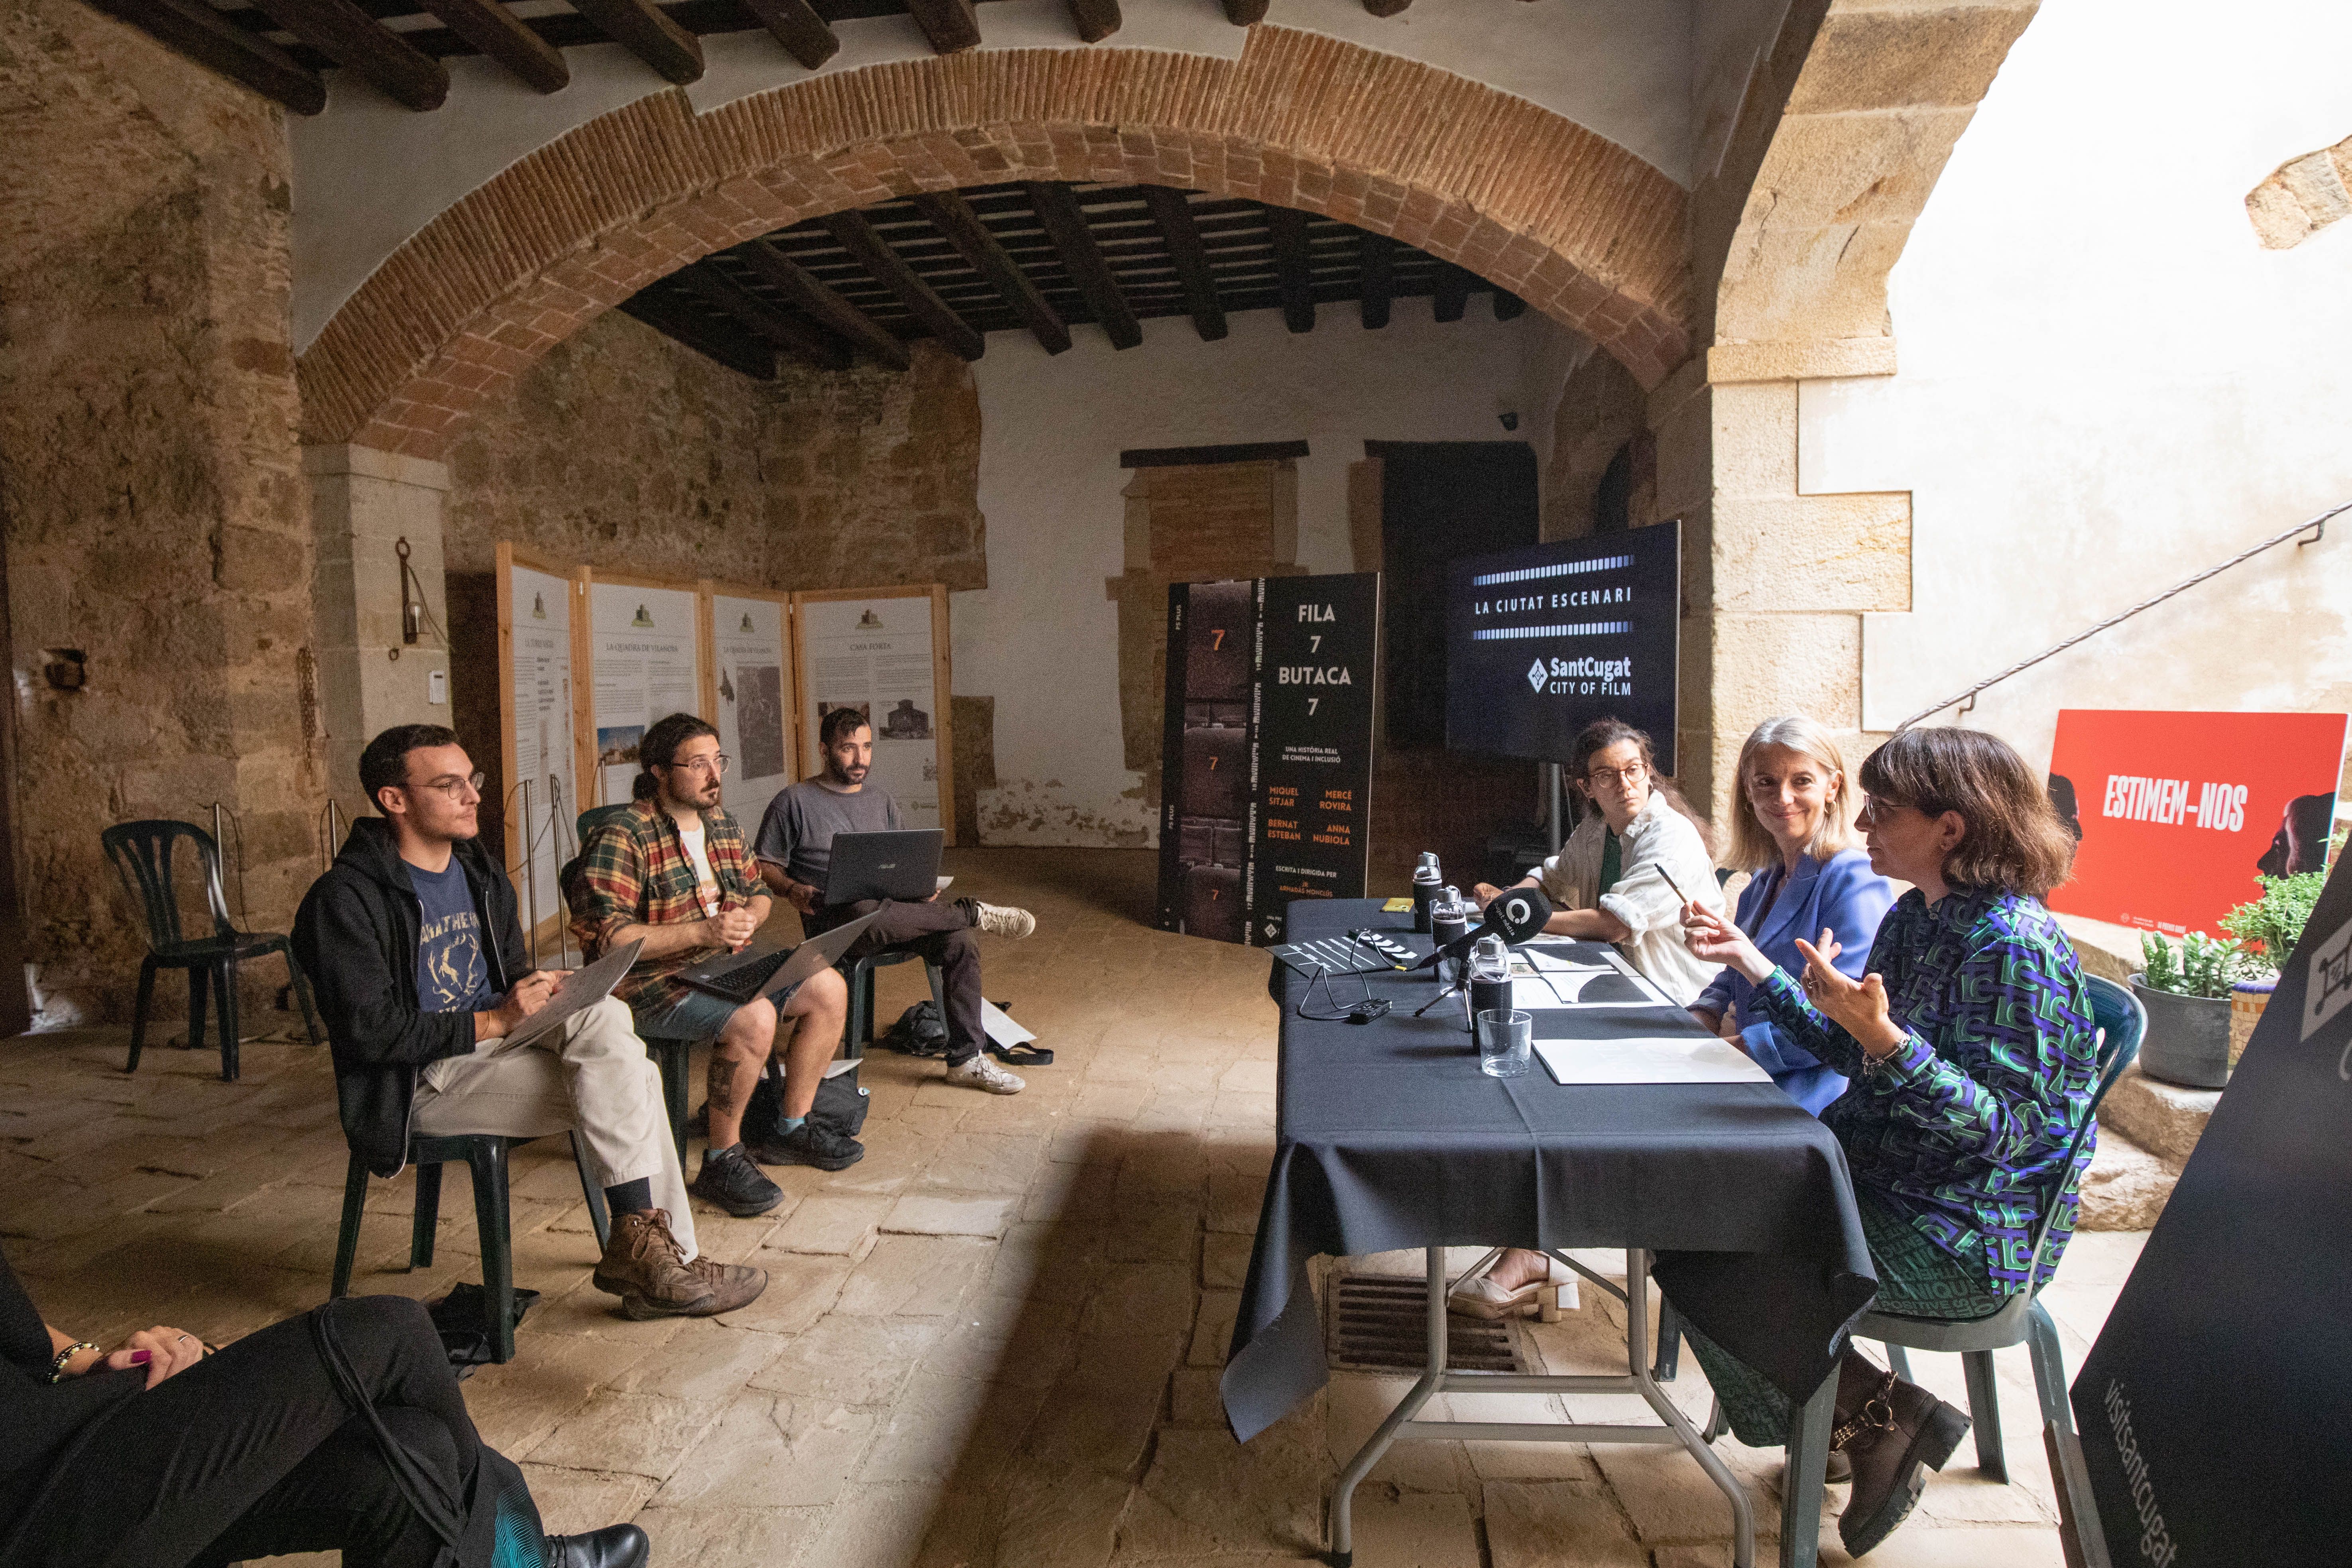 L'Ajuntament presenta Sant Cugat City of Film, una eina que ofereix assessorament sobre els tràmits i espais per fer rodatges a la ciutat, a la Torre Negra. FOTO: Arxiu